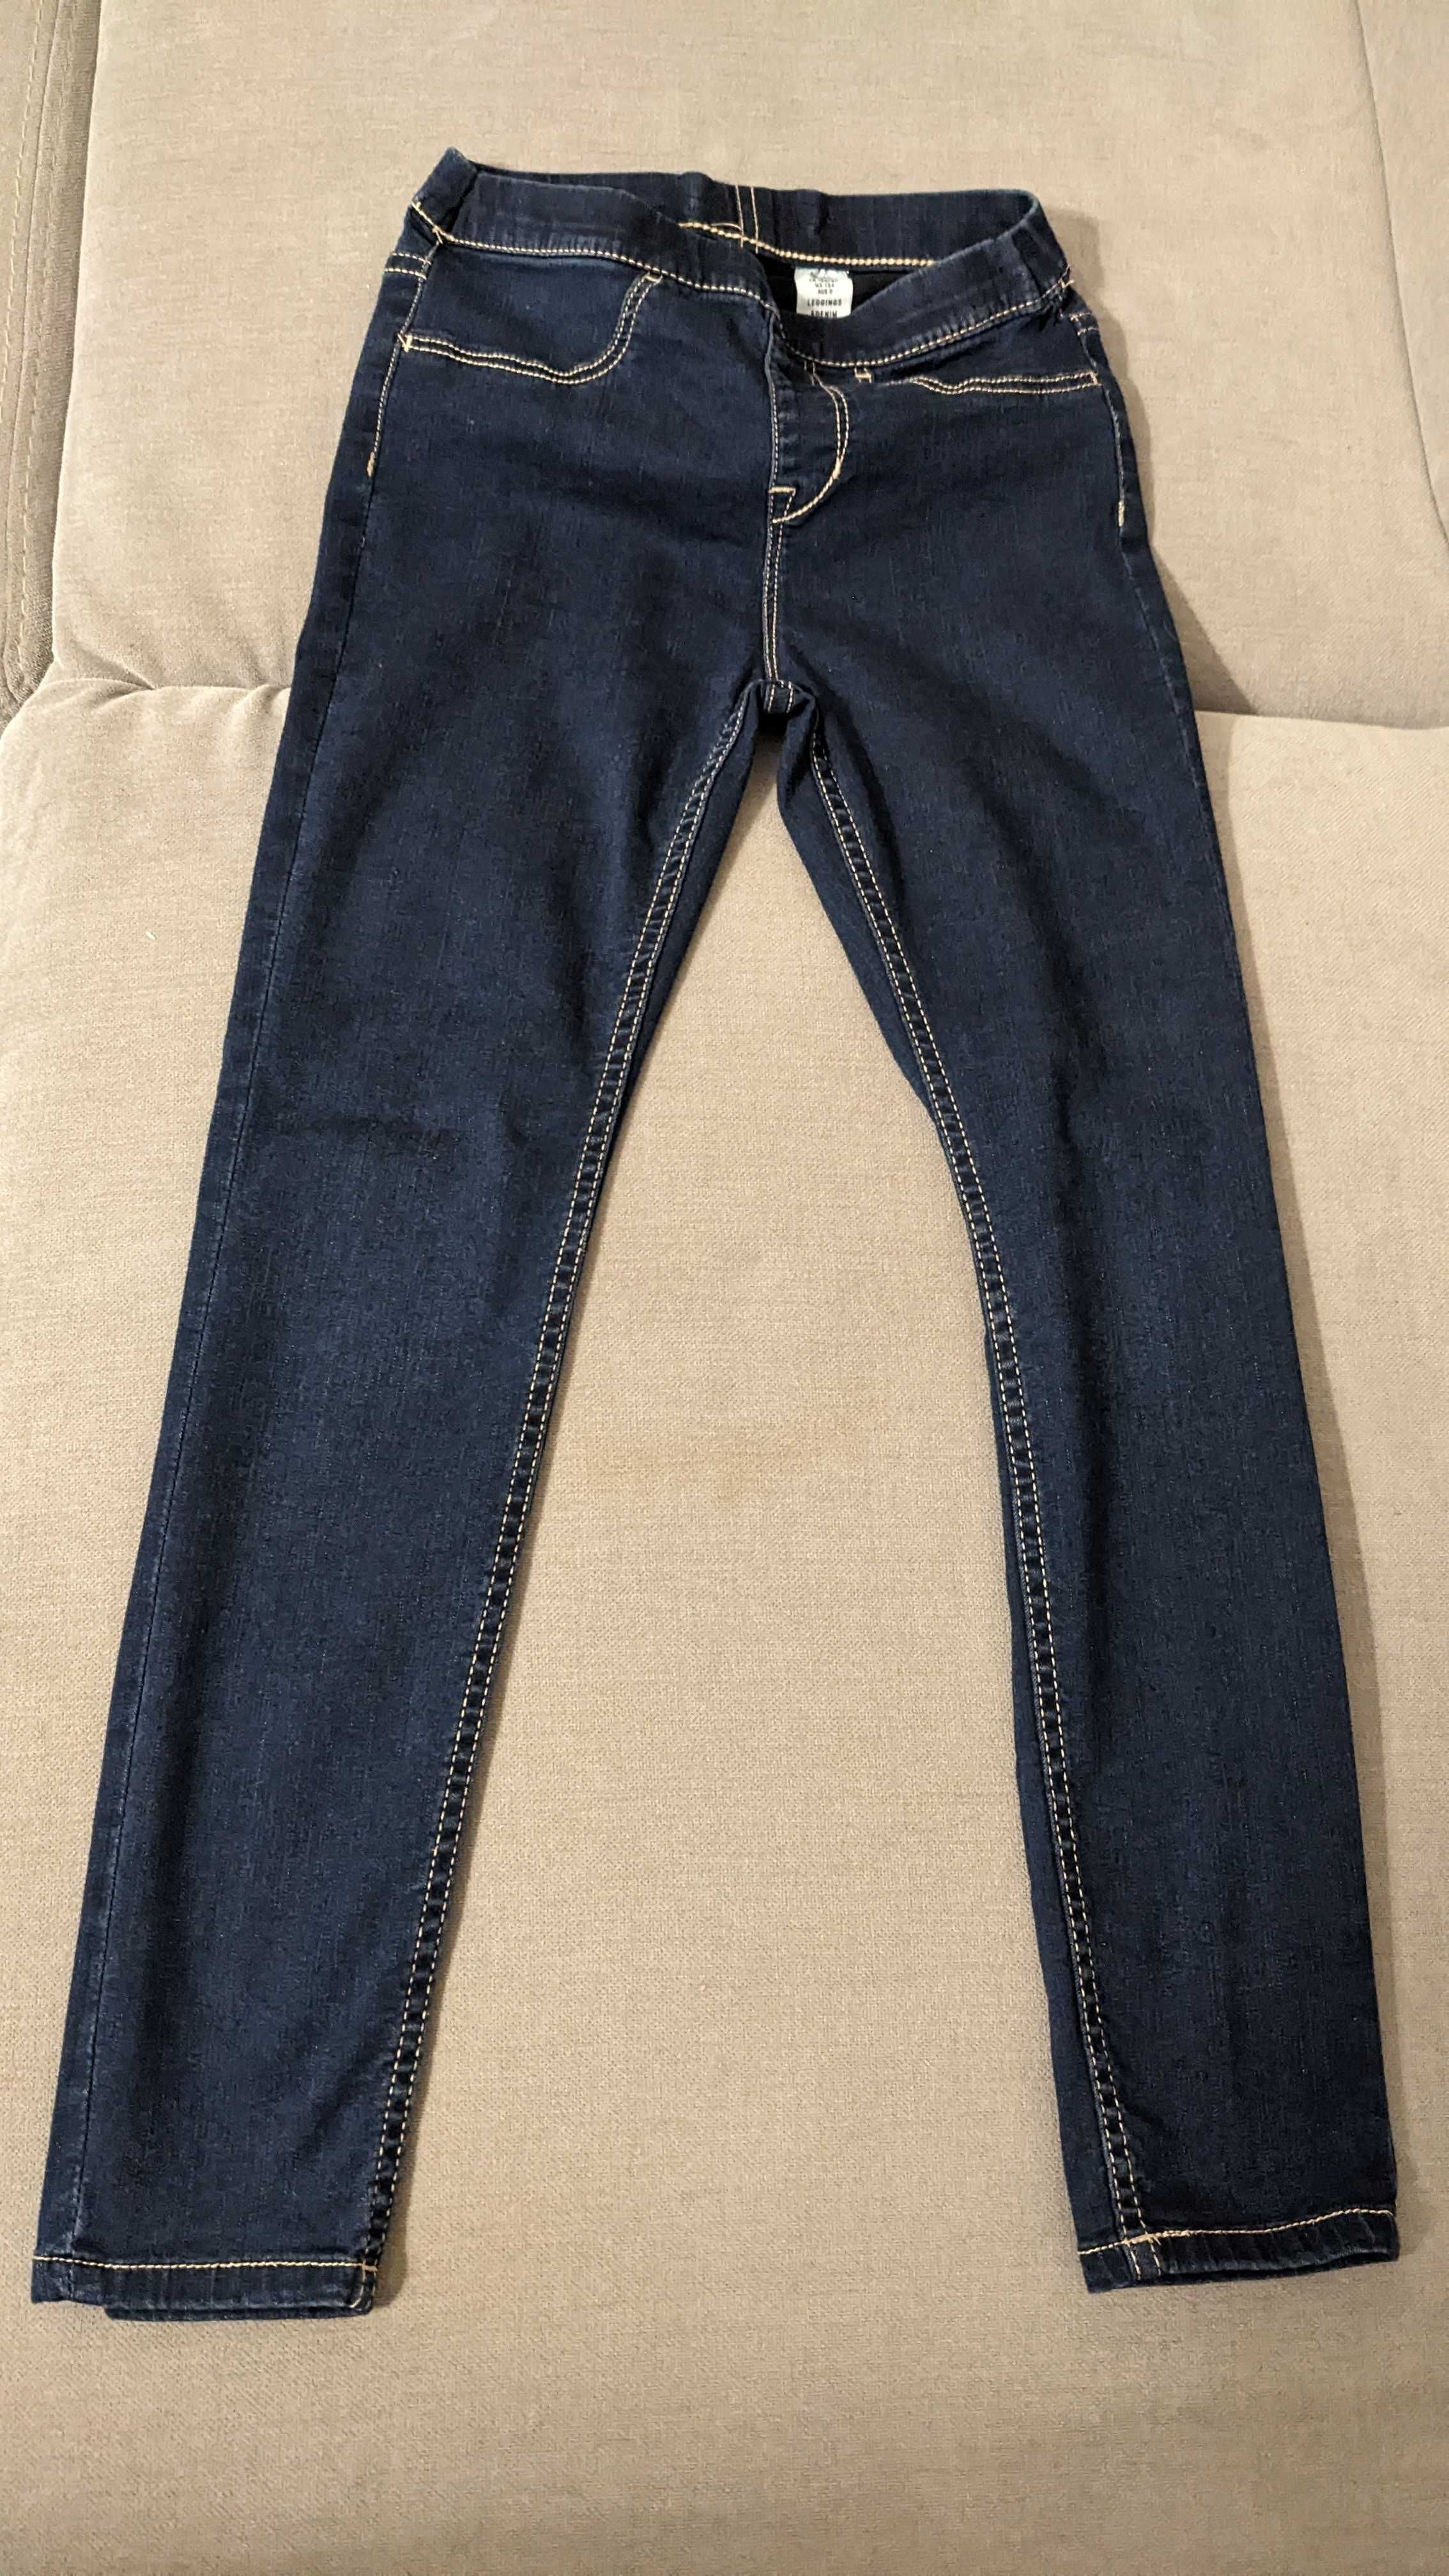 Dziewczęce jeansowe leggins - Leginsy Denim r 134 9 lat okazja